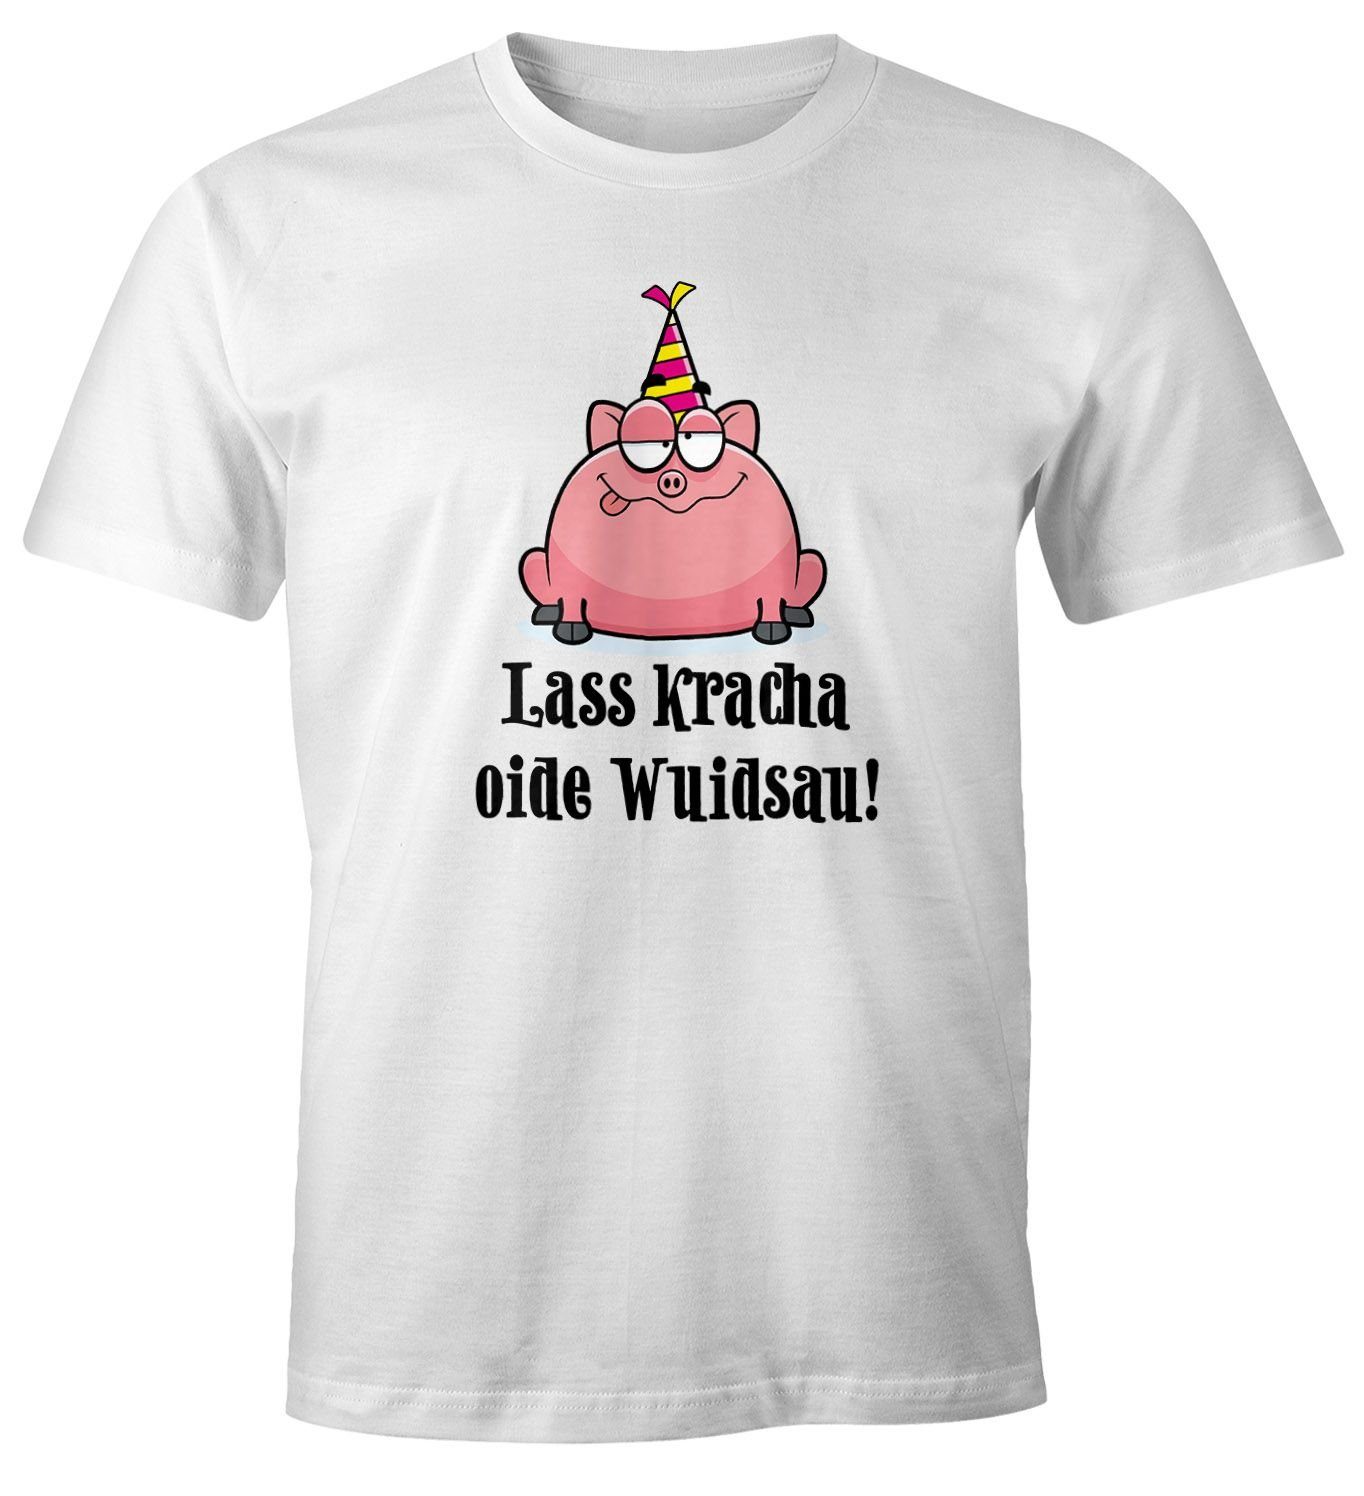 MoonWorks Print-Shirt Herren T-Shirt Geburtstag Schwein Spruch Lass kracha oide Wuidsau Fun-Shirt Geschenk Moonworks® mit Print weiß